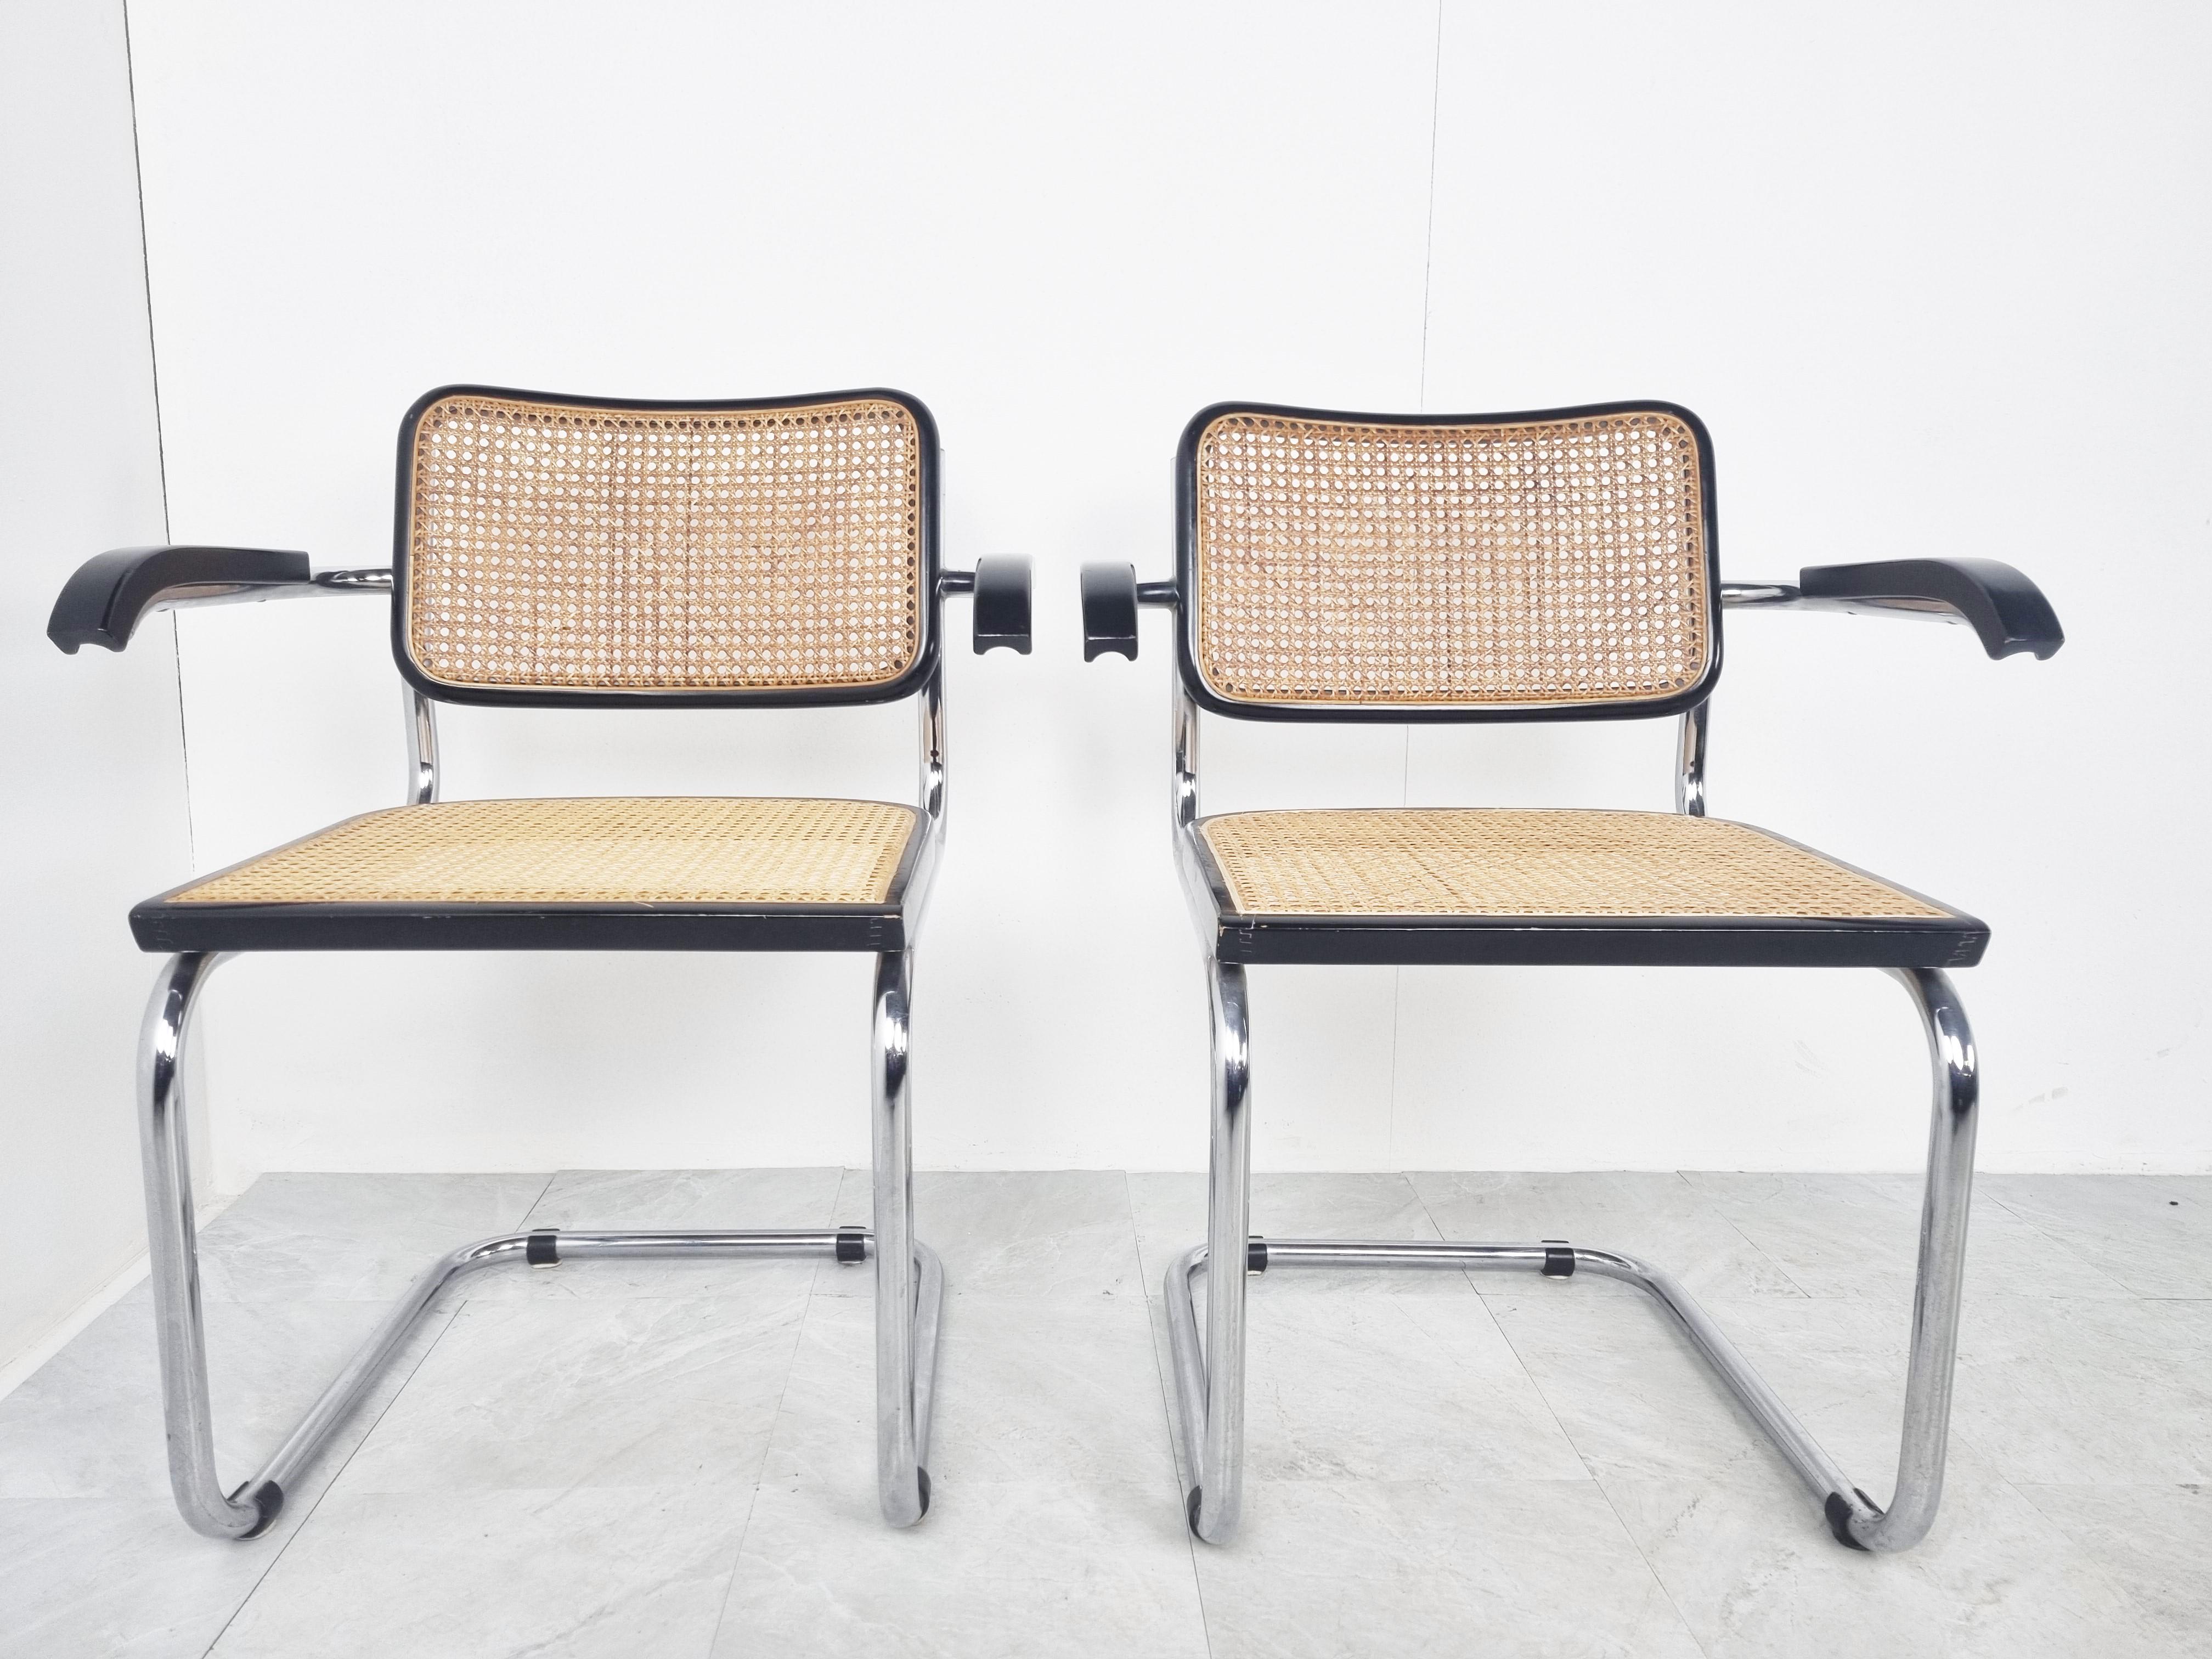 Paar B64 Marcel Breuer-Sessel, hergestellt in Italien, 1970er Jahre (Bauhaus)